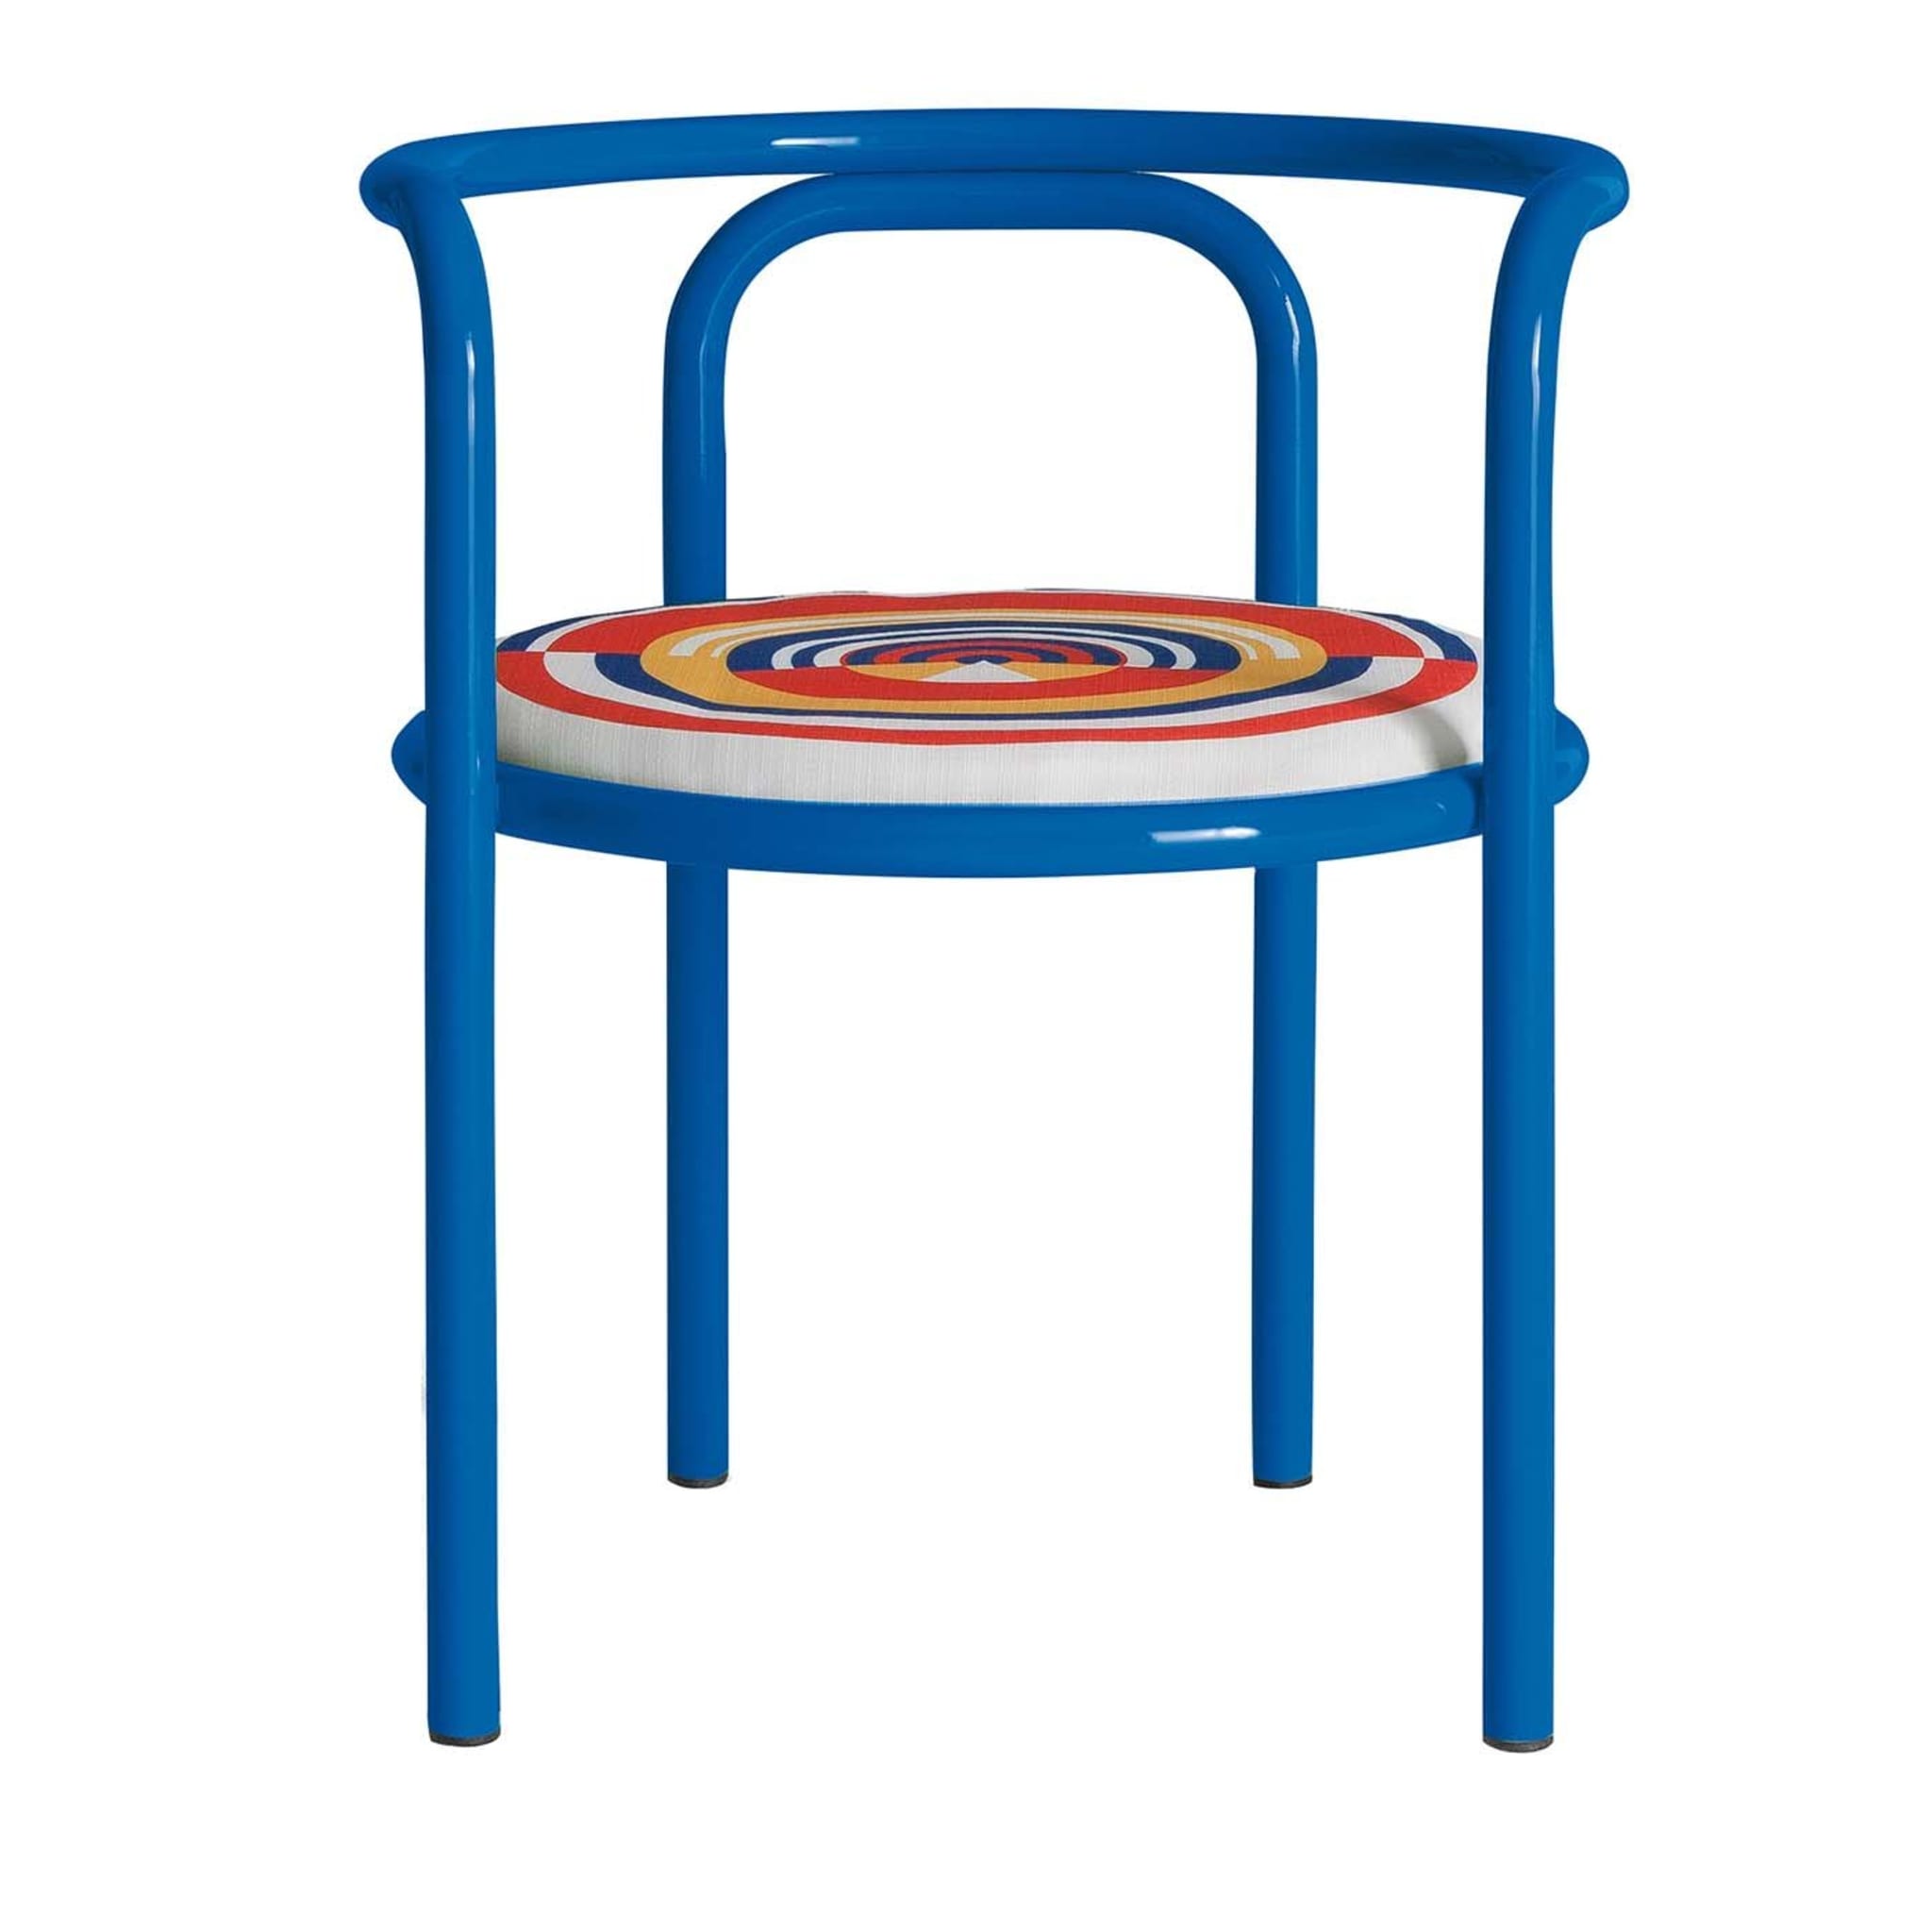 Locus Solus Blue Chair by Gae Aulenti - Main view